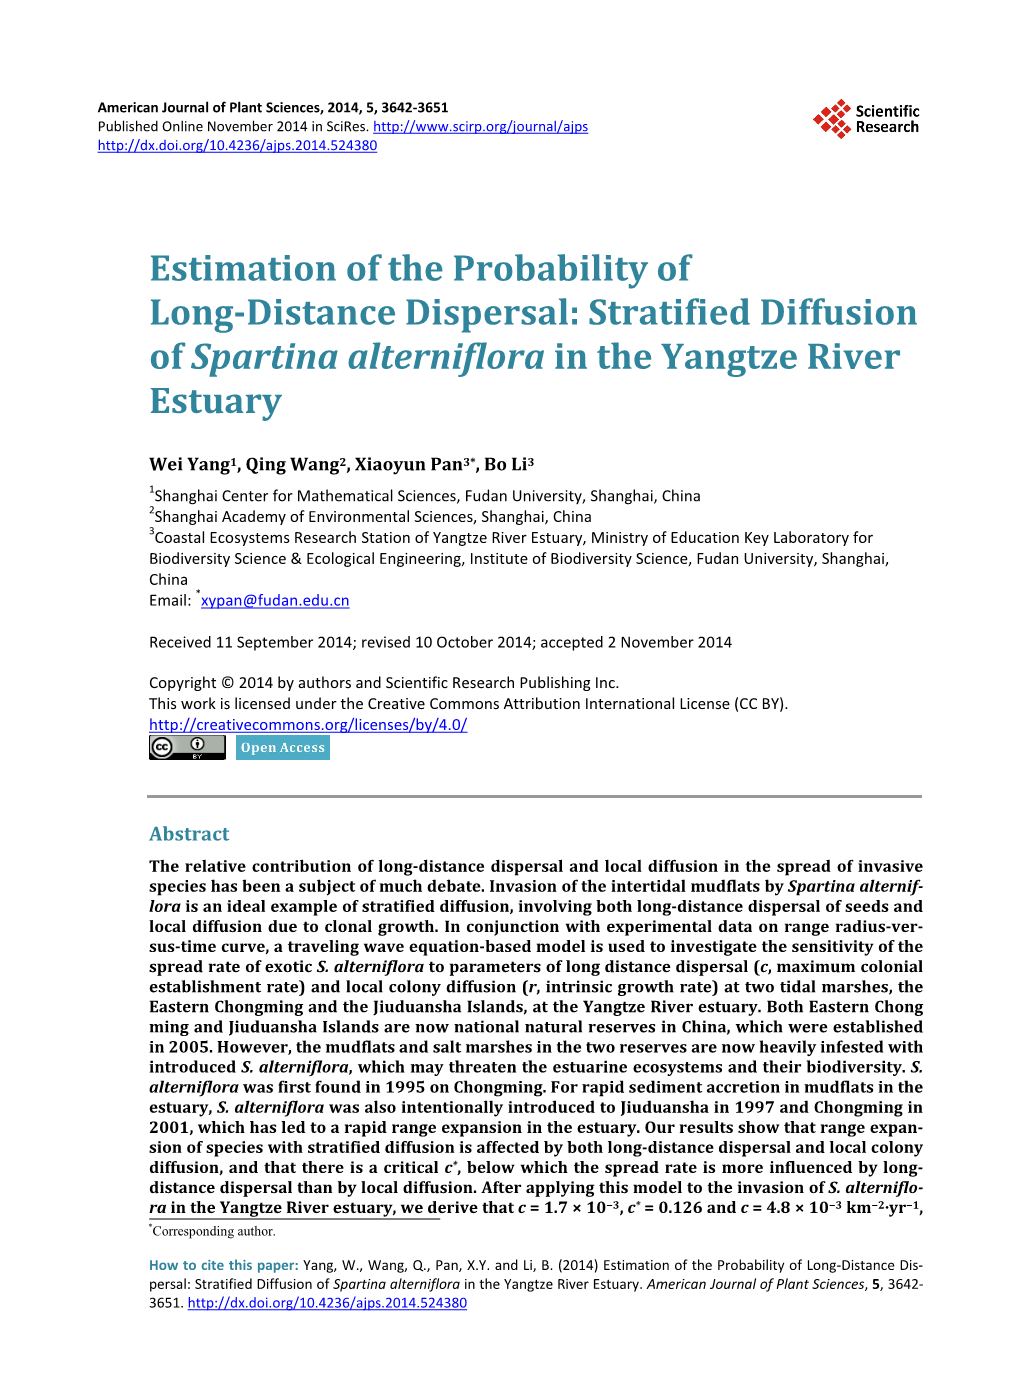 Stratified Diffusion of Spartina Alterniflora in the Yangtze River Estuary